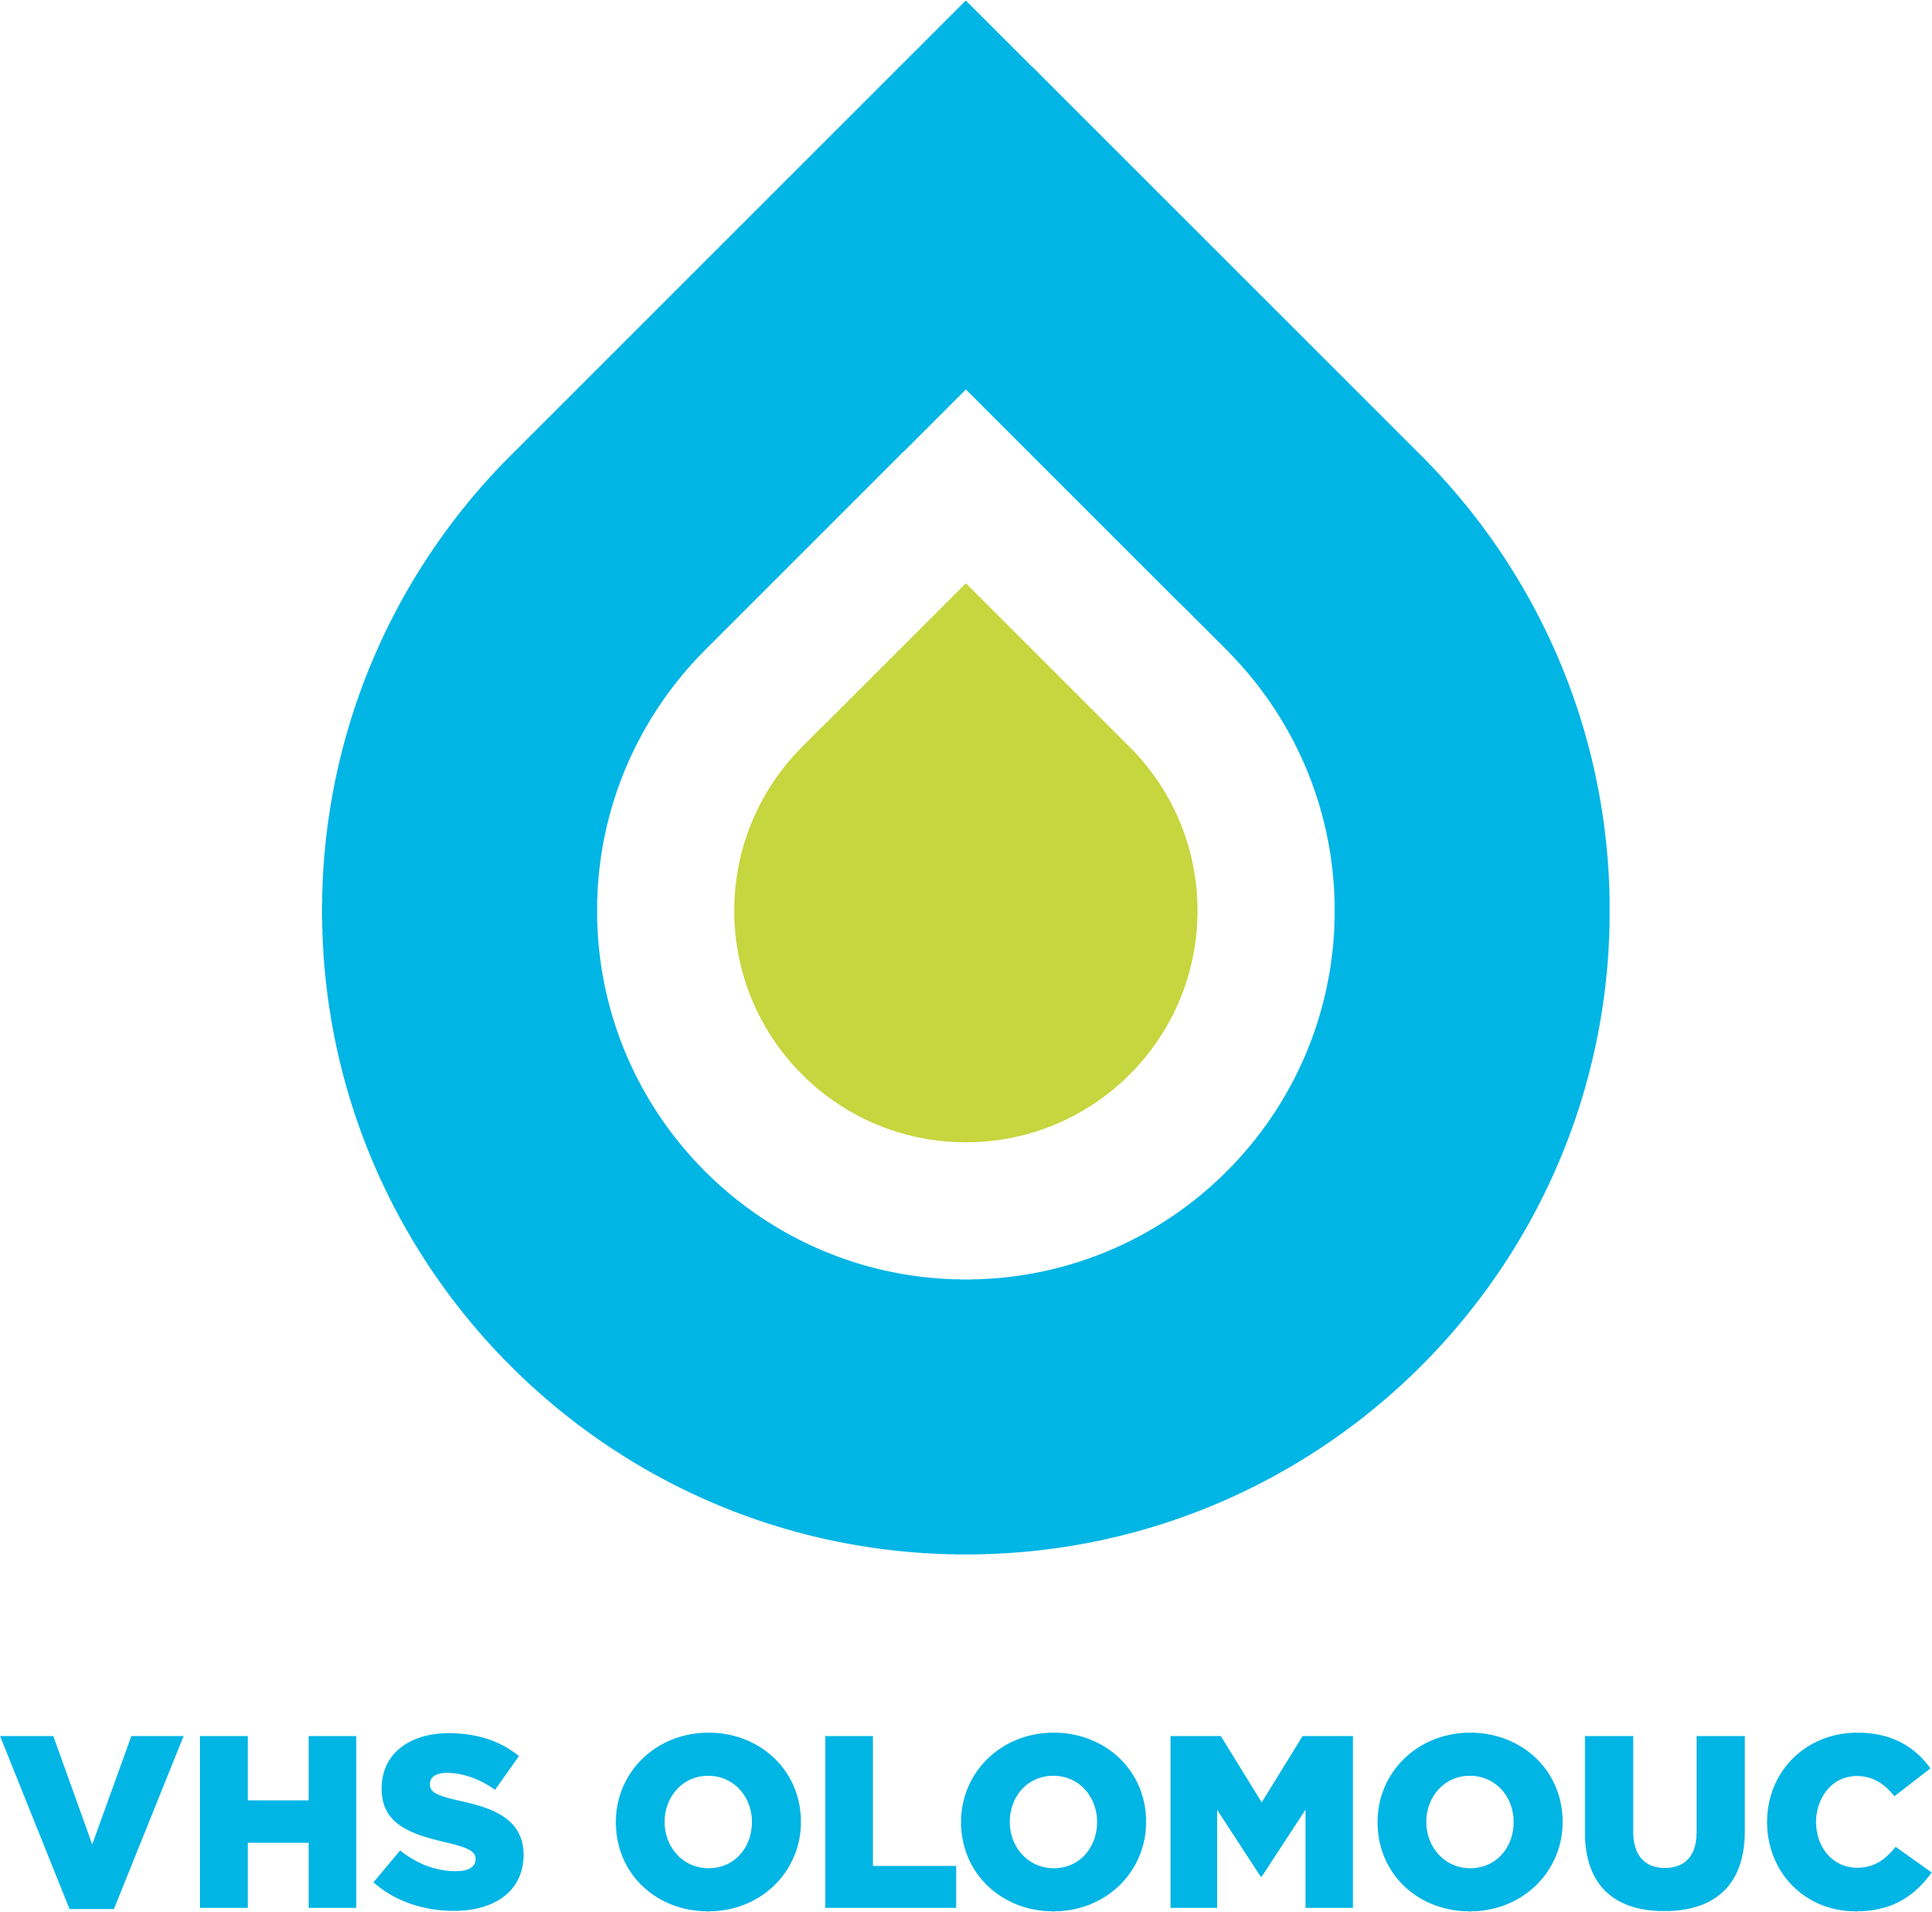 VHS Olomouc logo